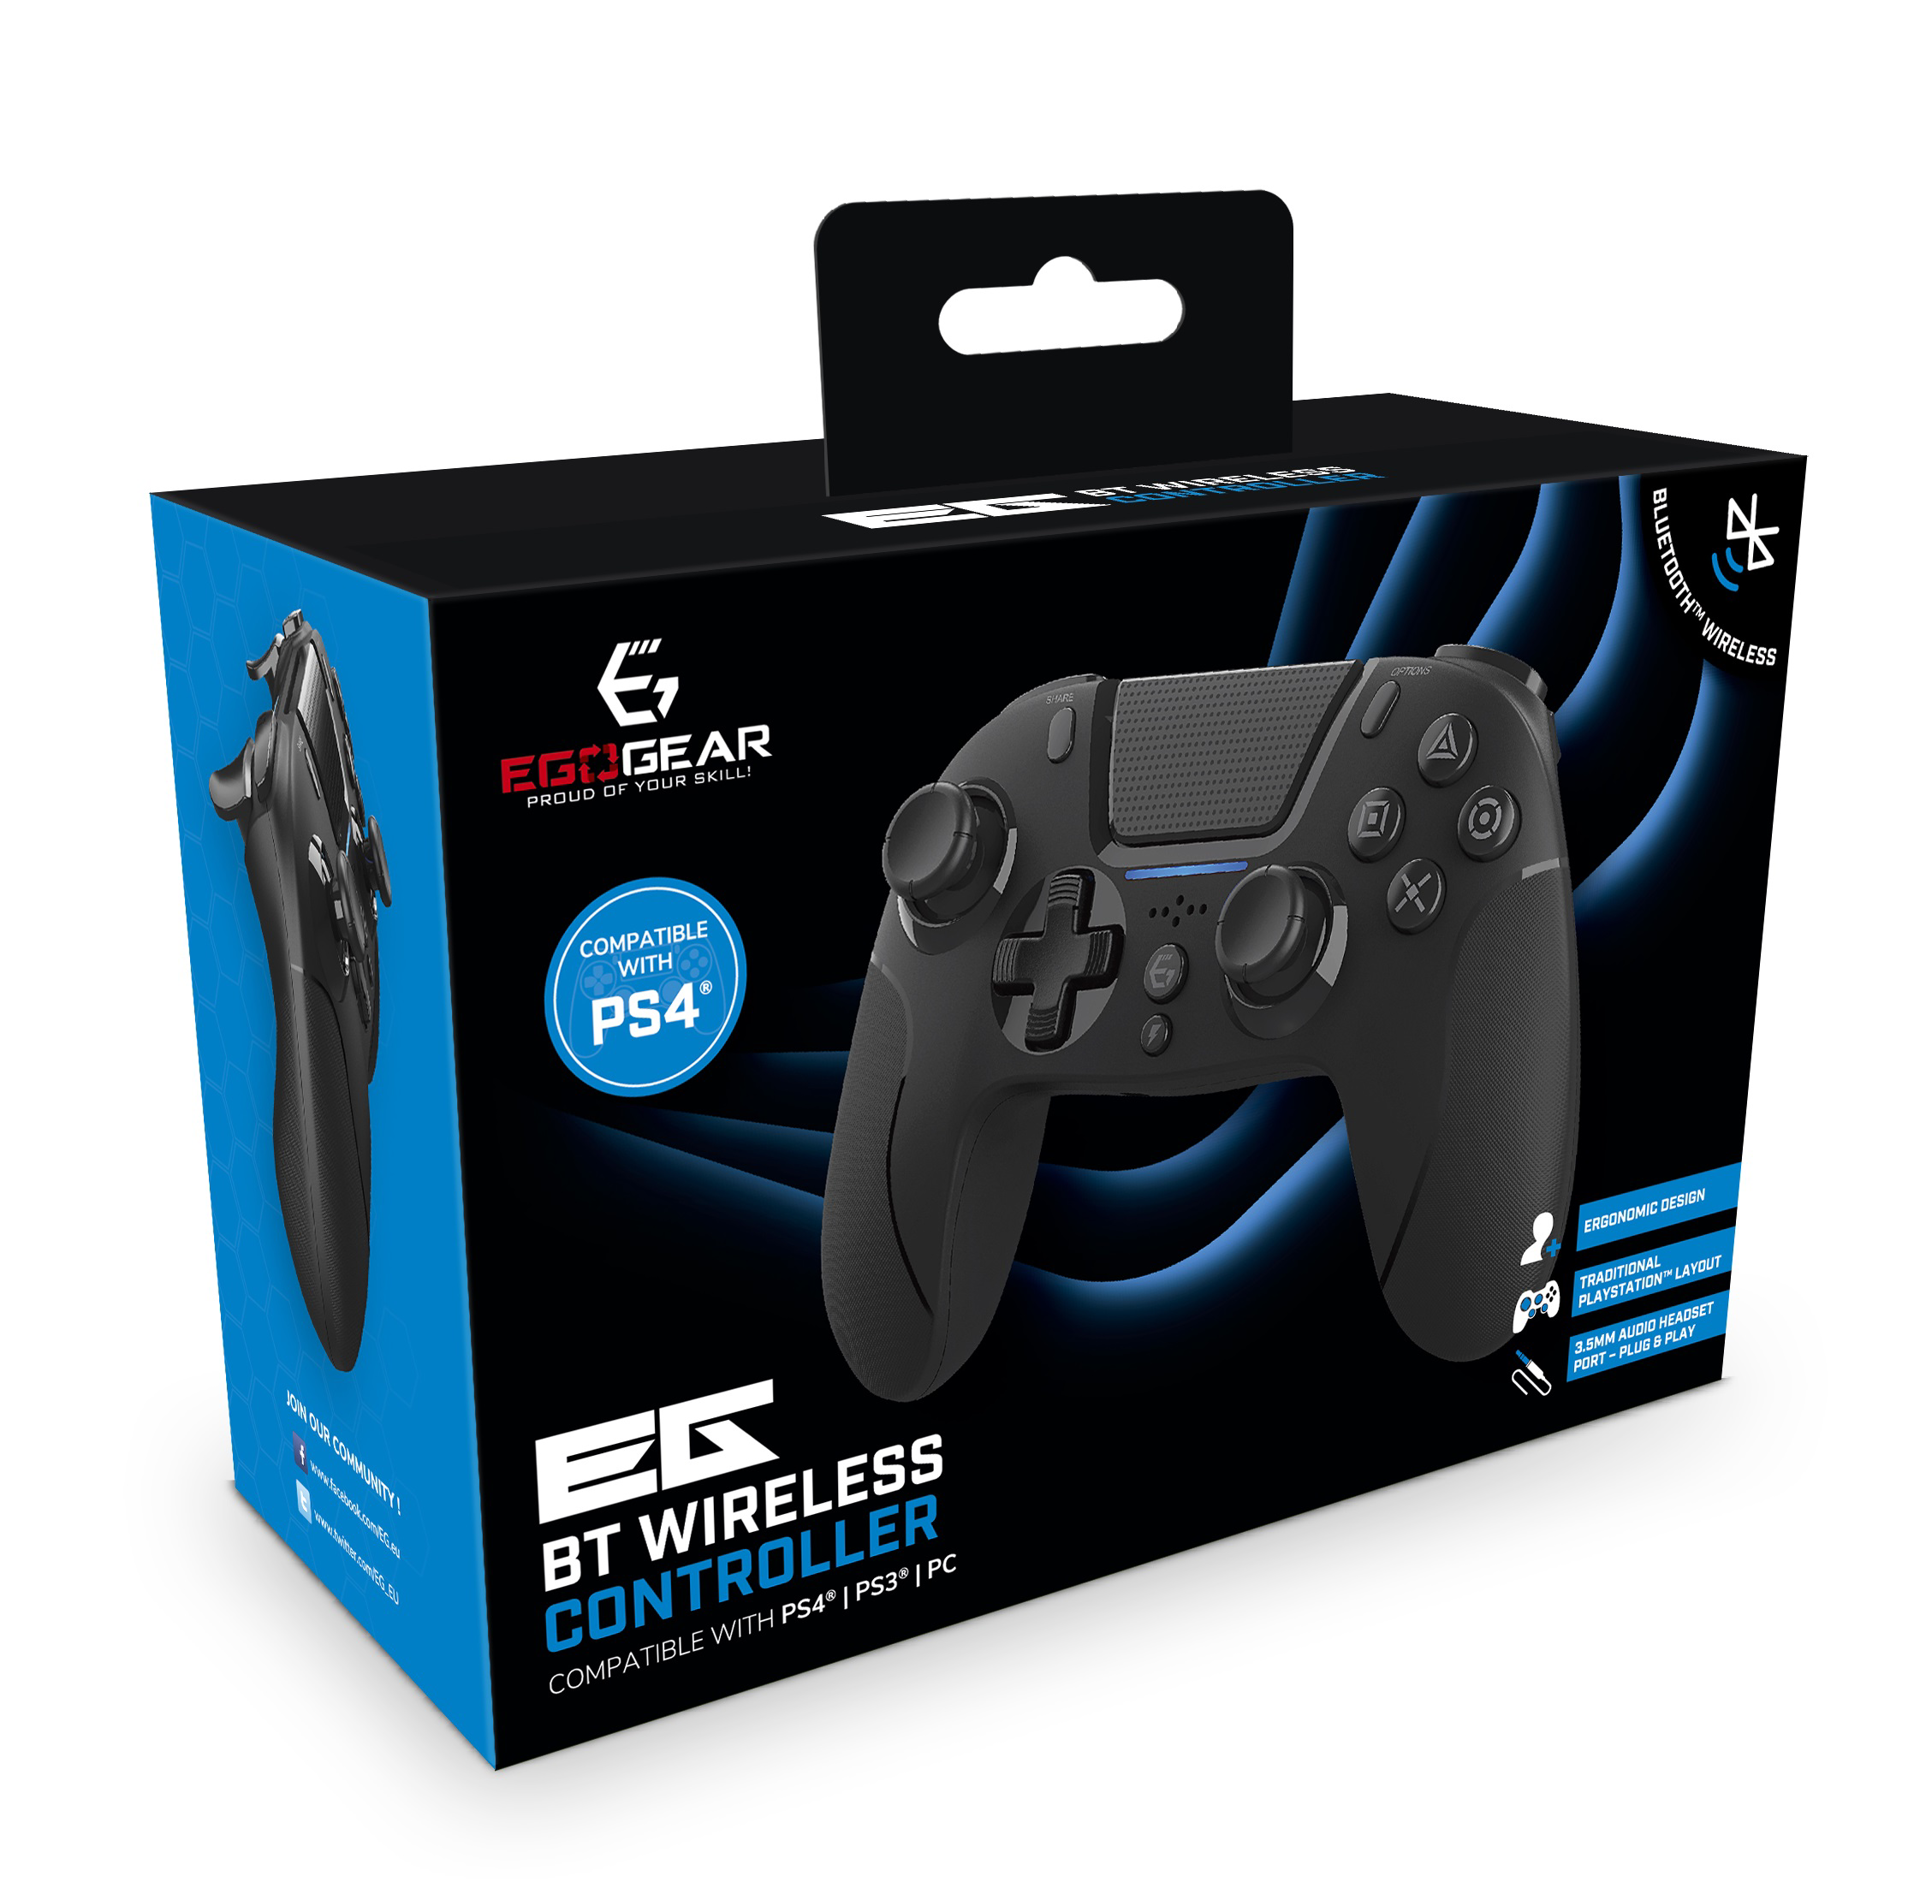 EgoGear - Manette sans fil Bluetooth SC15 Noire pour PS4, PS3 et PC